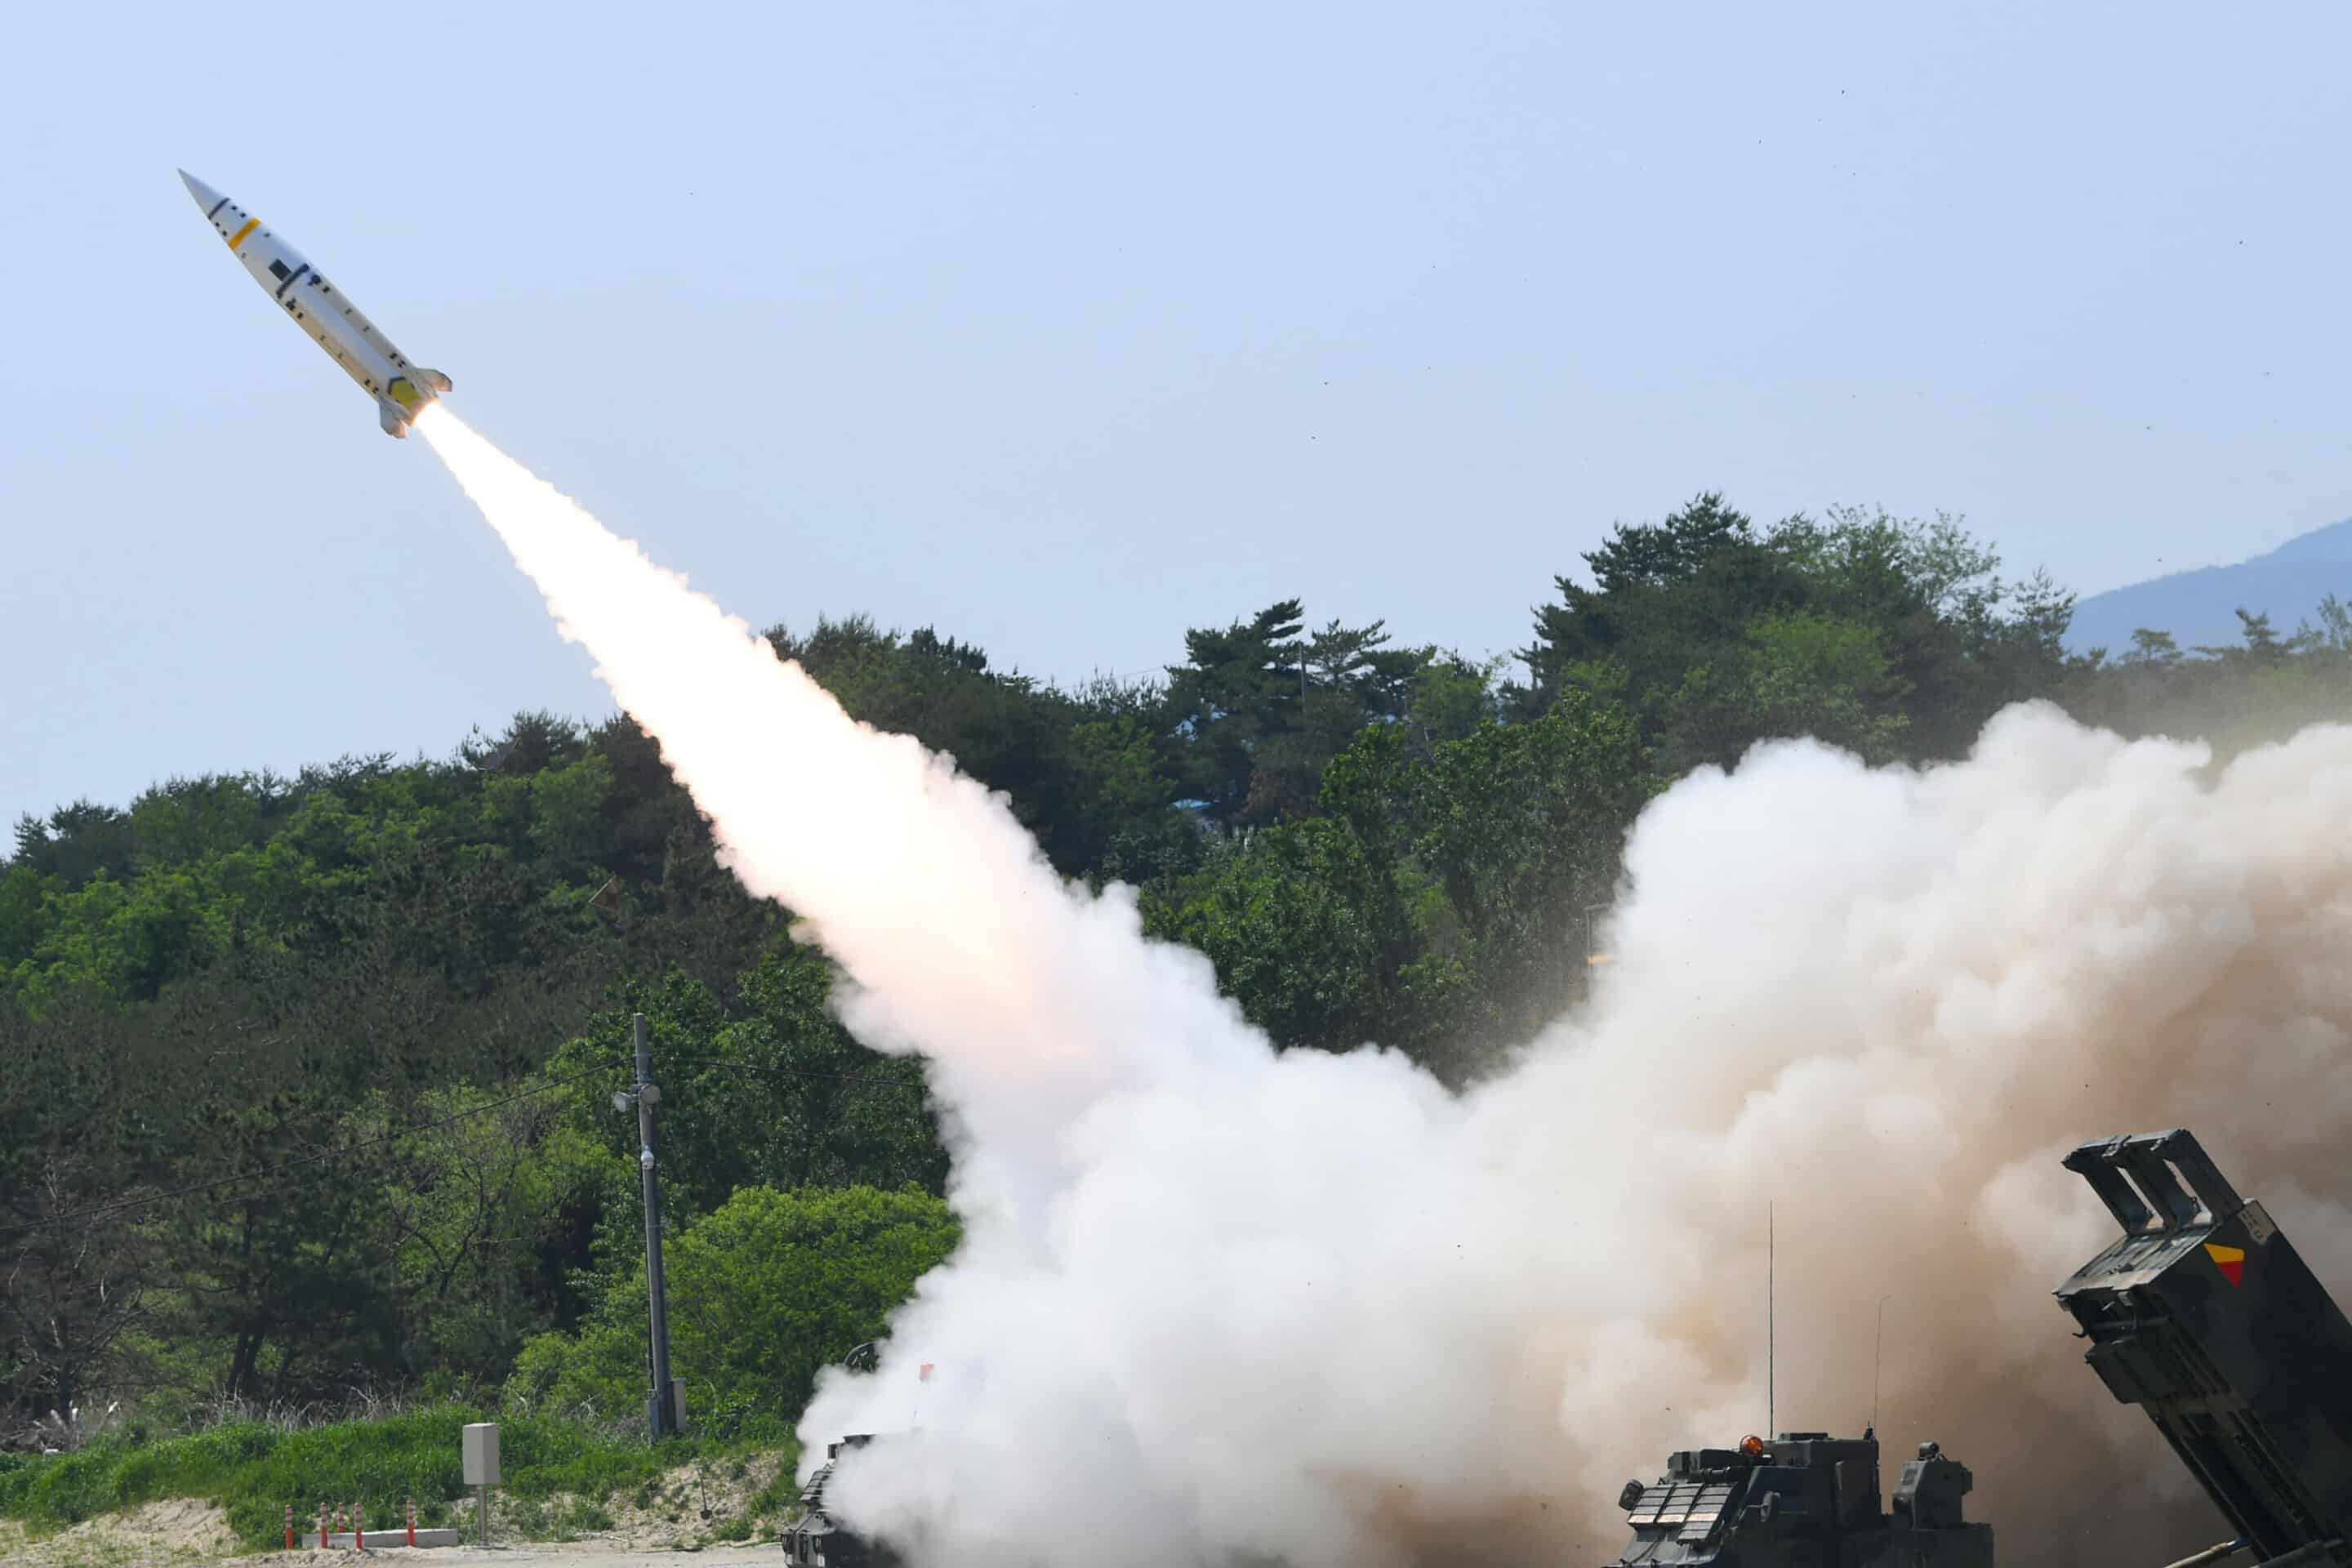 Missile tiré lors d'un entraînement conjoint entre les États-Unis et la Corée du Sud dans un lieu non divulgué en Corée du Sud, mercredi 25 mai 2022
AP)/SEL114/22145325331200/AP PROVIDES ACCESS TO THIS PUBLICLY DISTRIBUTED HANDOUT PHOTO PROVIDED BY SOUTH KOREA DEFENSE MINISTRY ; MANDATORY CREDIT./2205251121